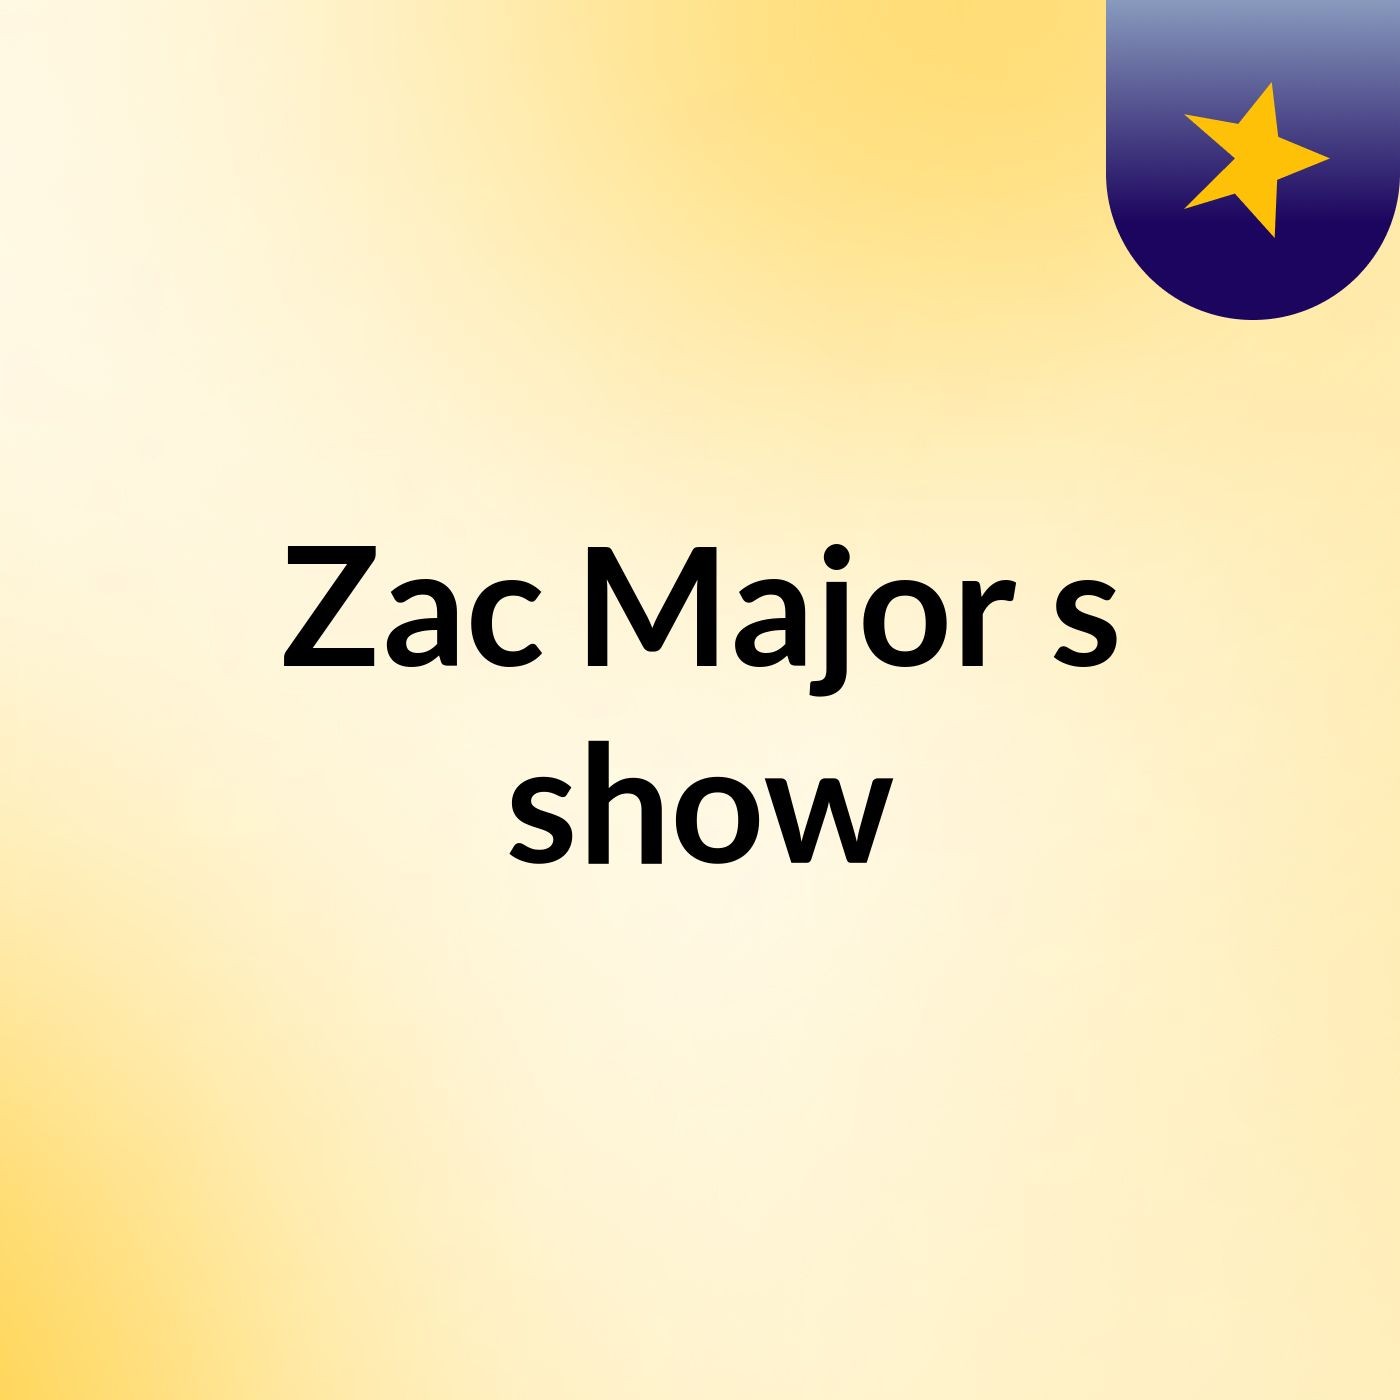 Zac Major's show